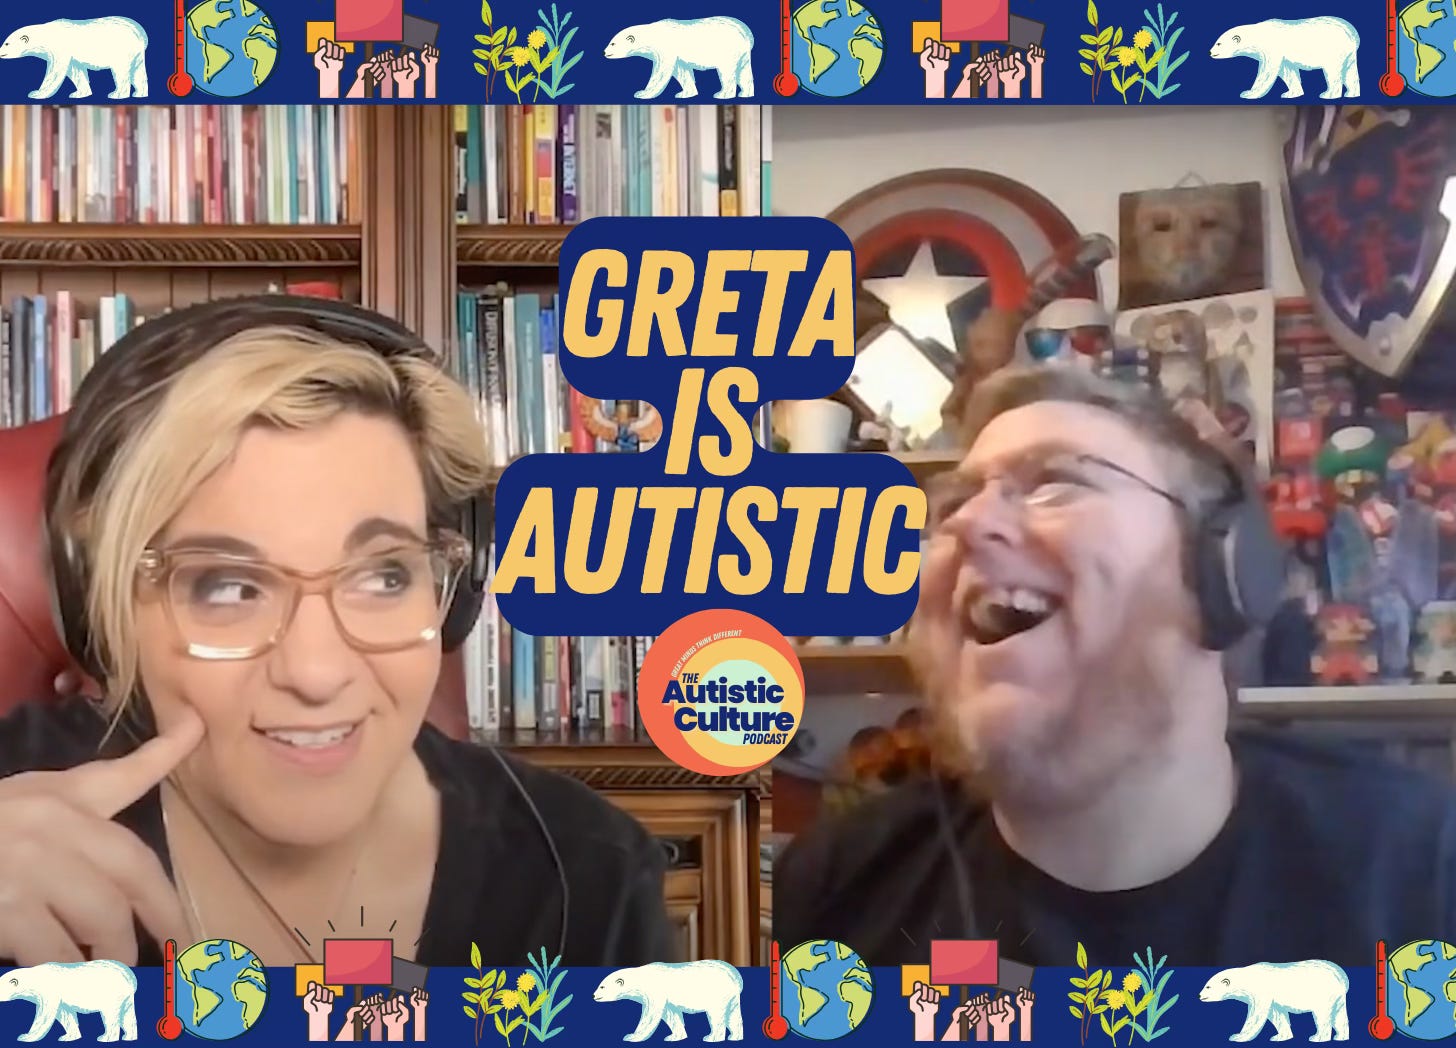 Listen to Autistic podcast hosts discuss: Greta is Autistic